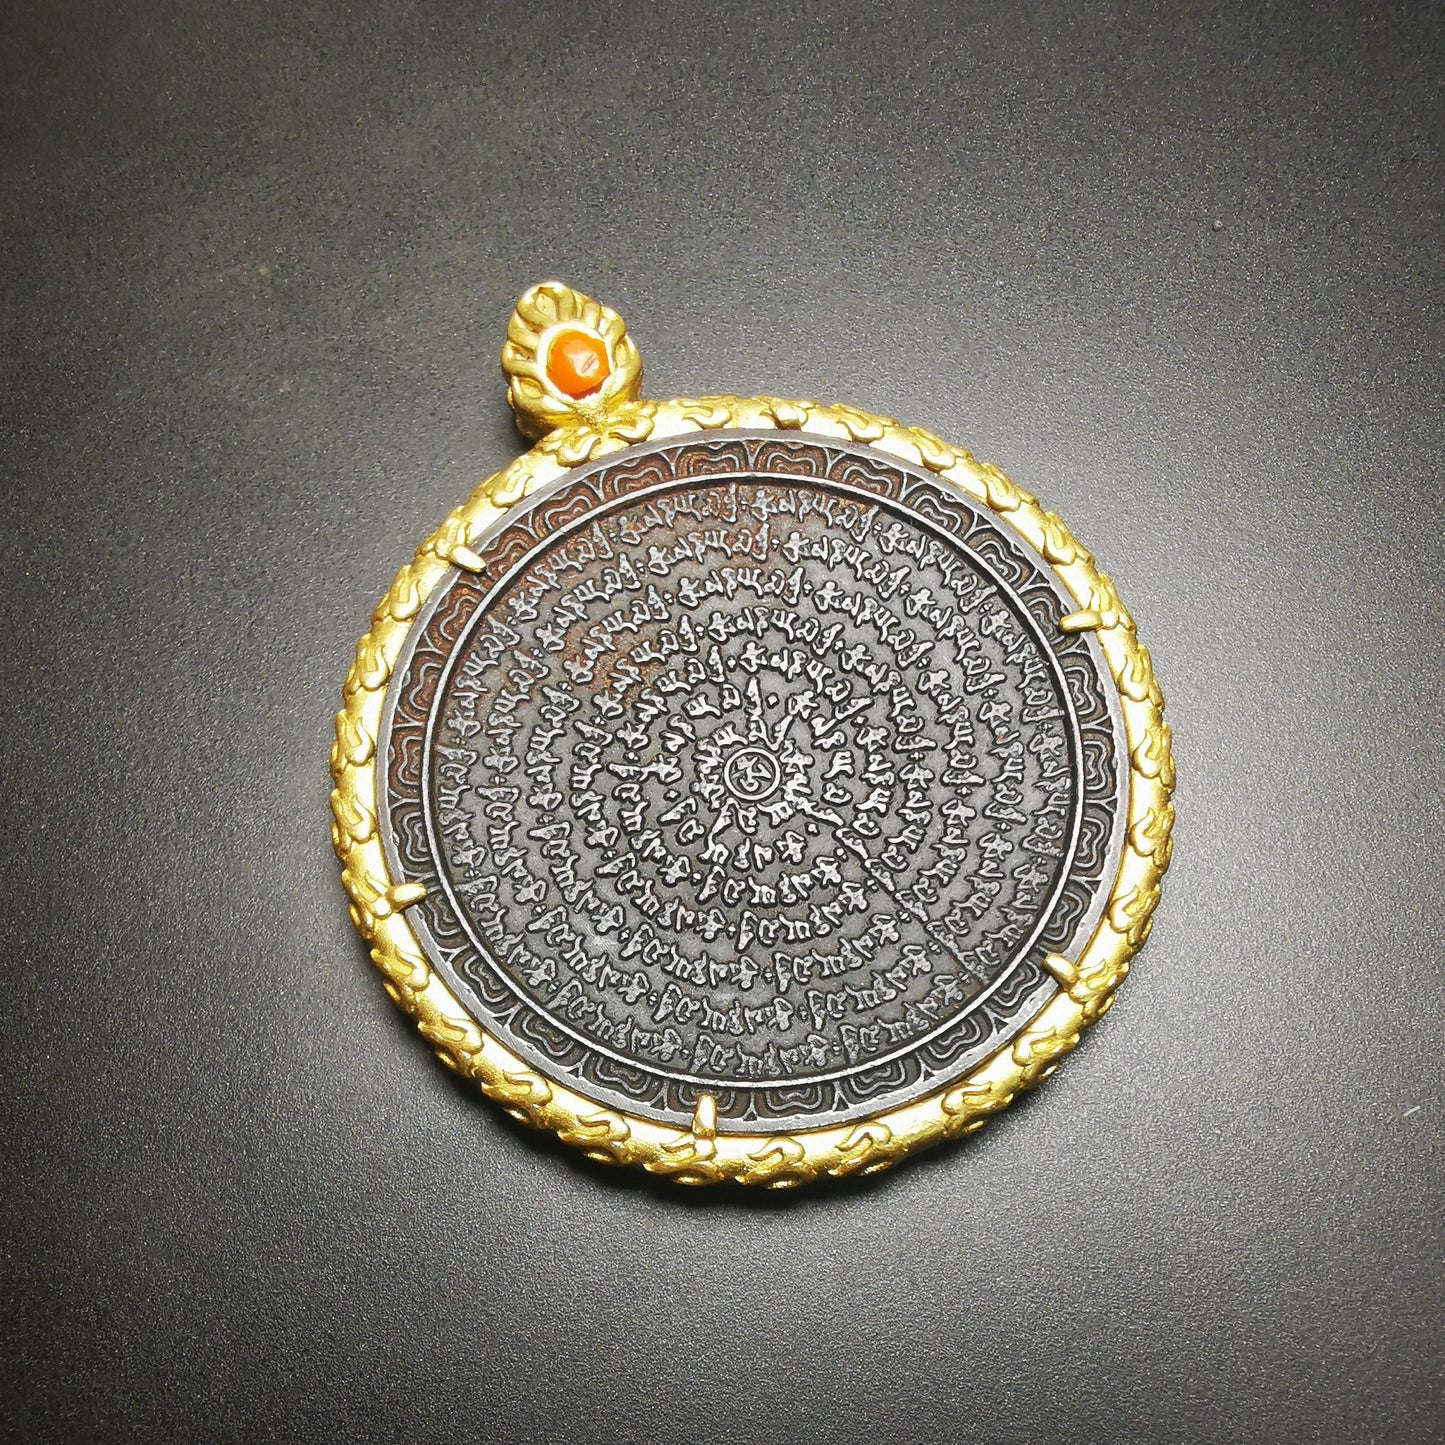 Gandhanra Handmade Tibetan Buddhist Amulet,Om Badge, Mantra of Om Mani Padme Hum, Made of Thokcha -Thunder Iron